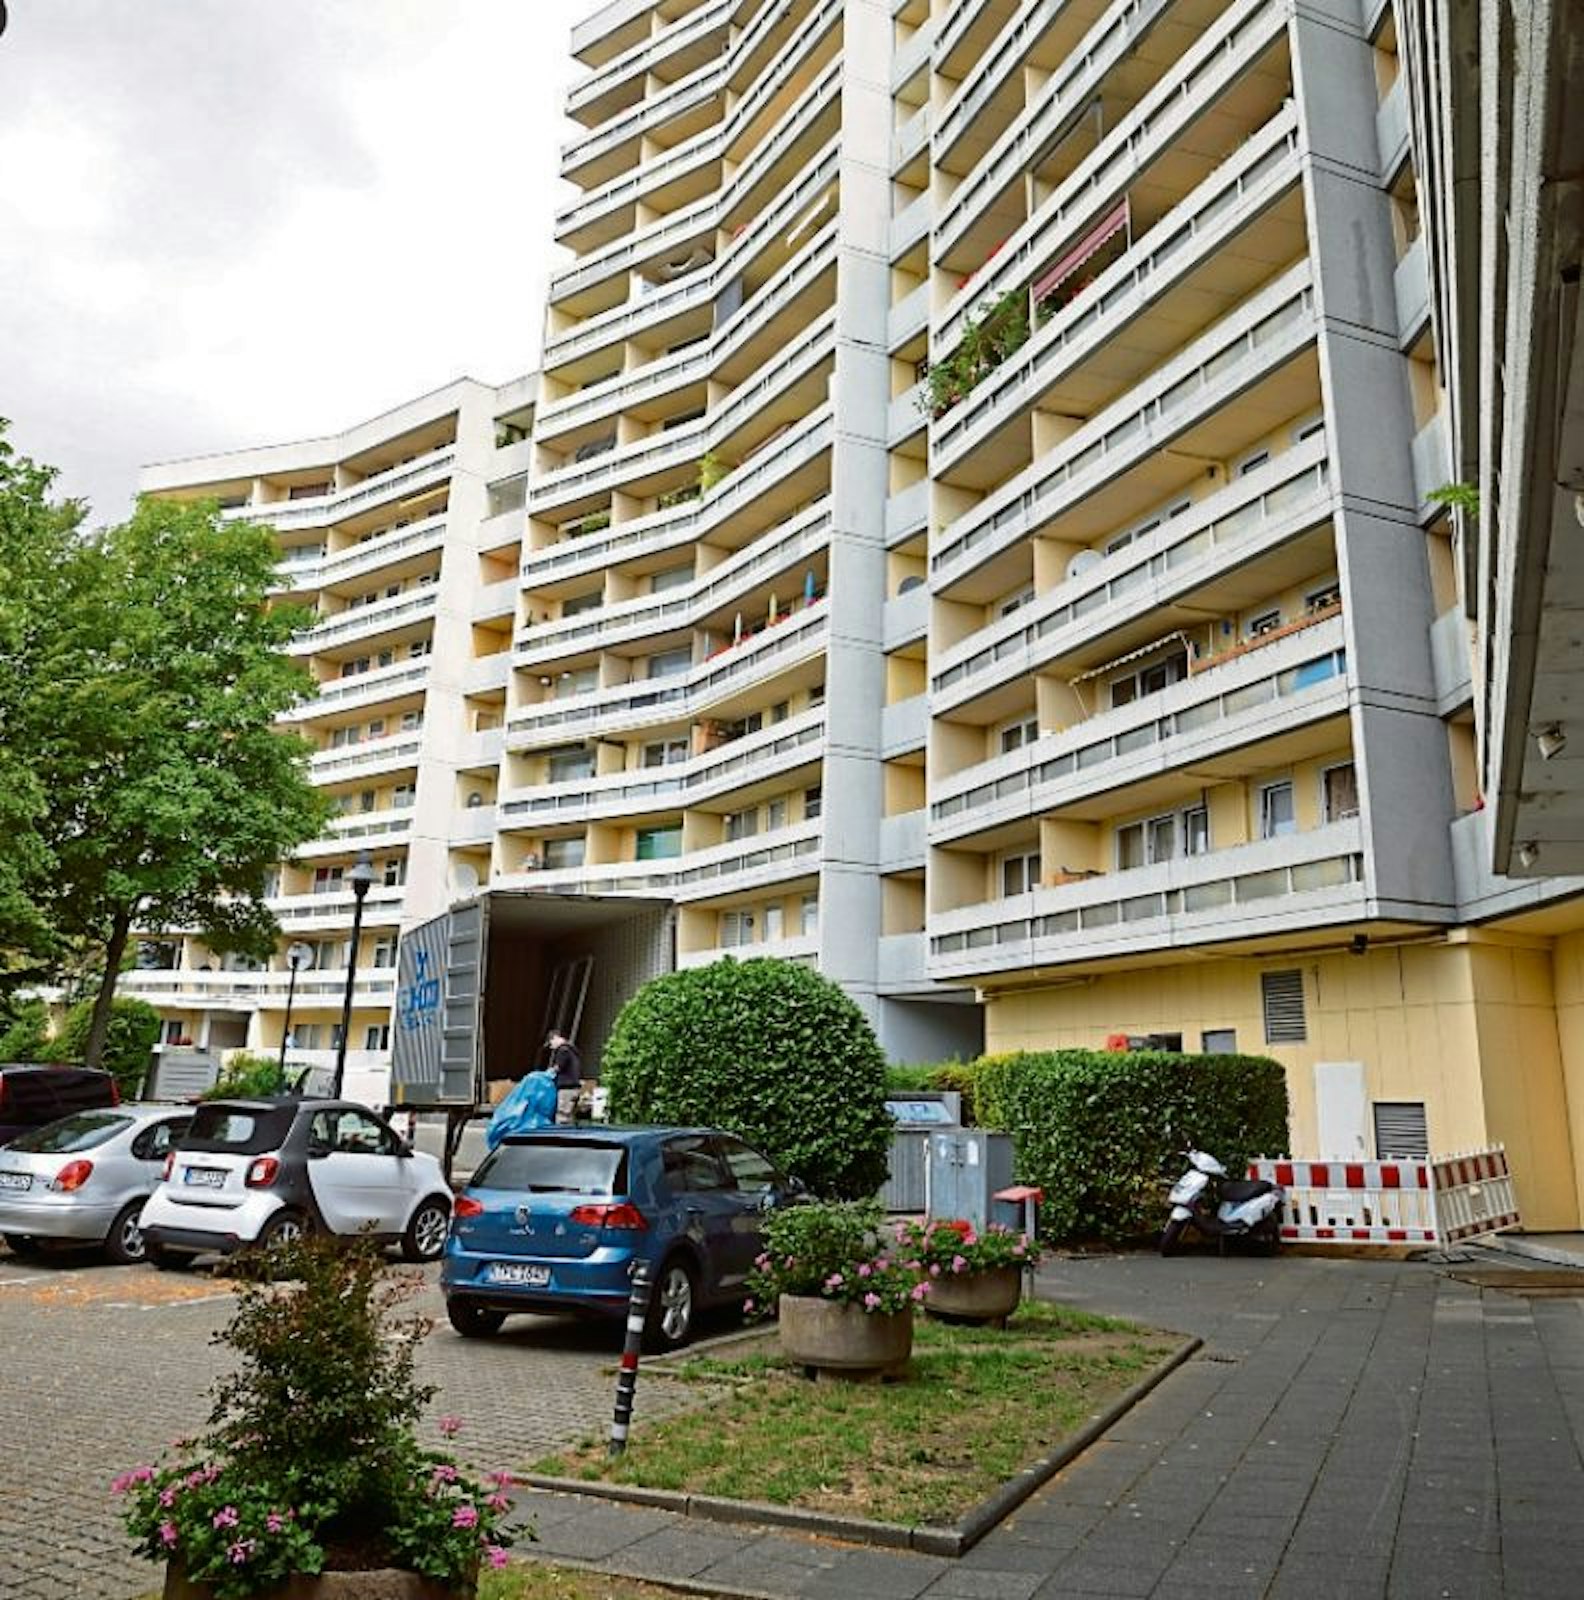 Anfang der 1970er-Jahre entstand die Hochhaussiedlung an der Mülheimer Straße.